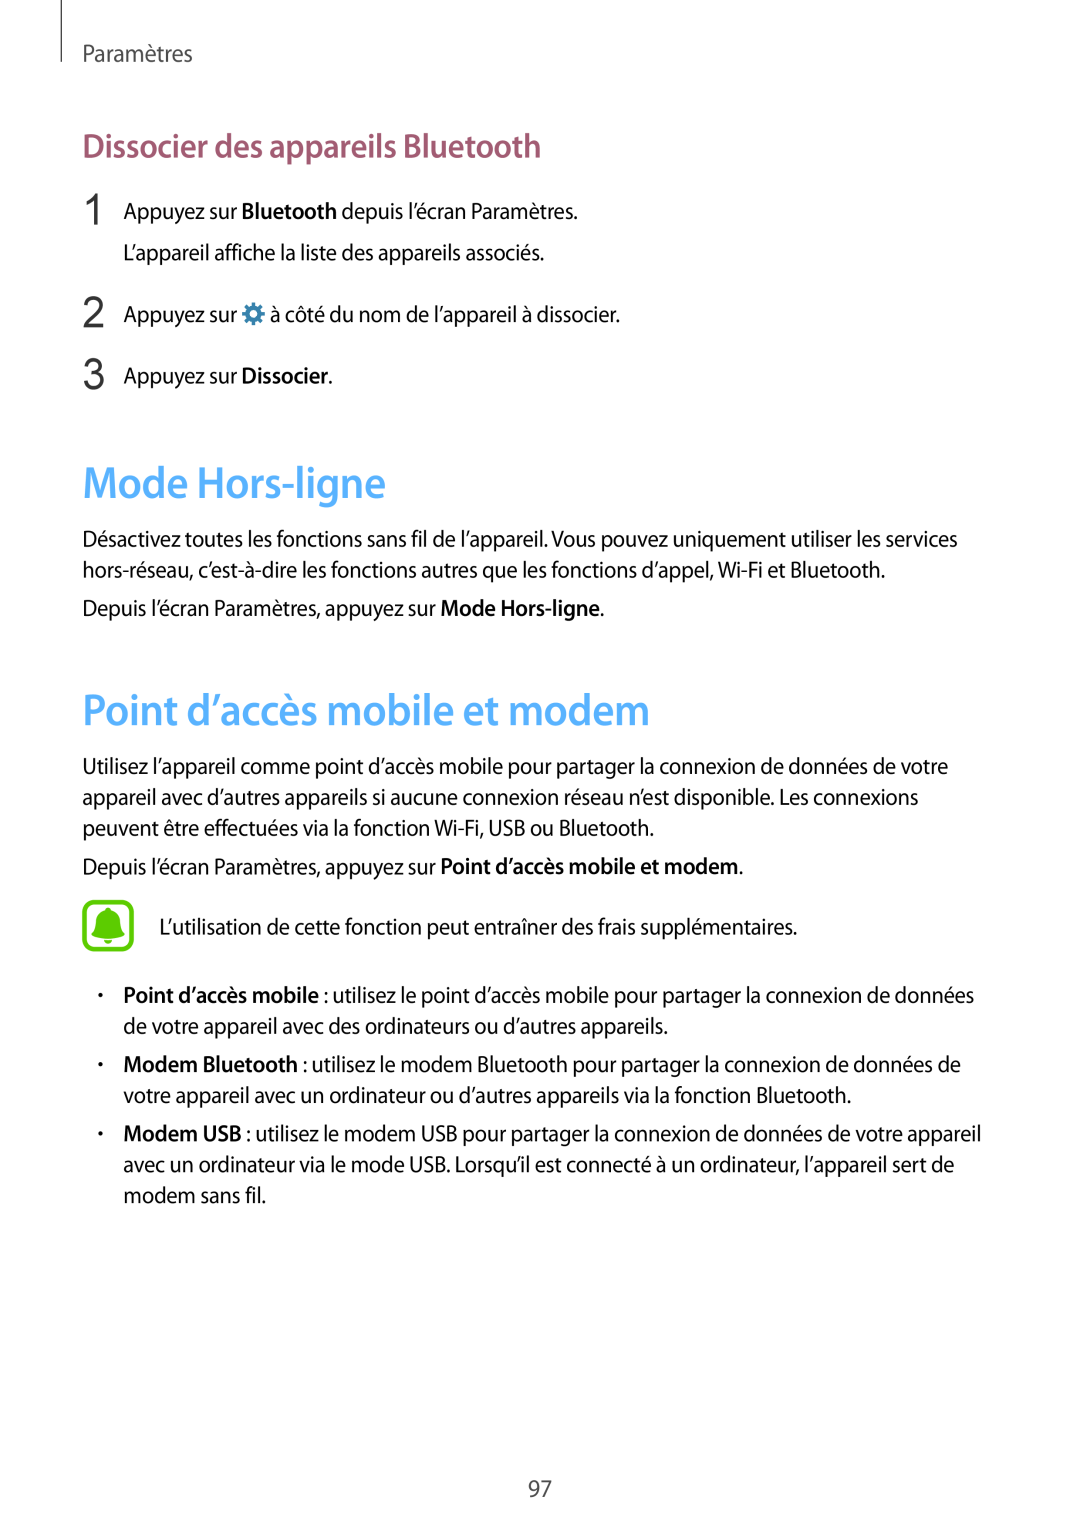 Samsung SM-G920FZKAXEF manual Mode Hors-ligne, Point d’accès mobile et modem, Dissocier des appareils Bluetooth, Paramètres 